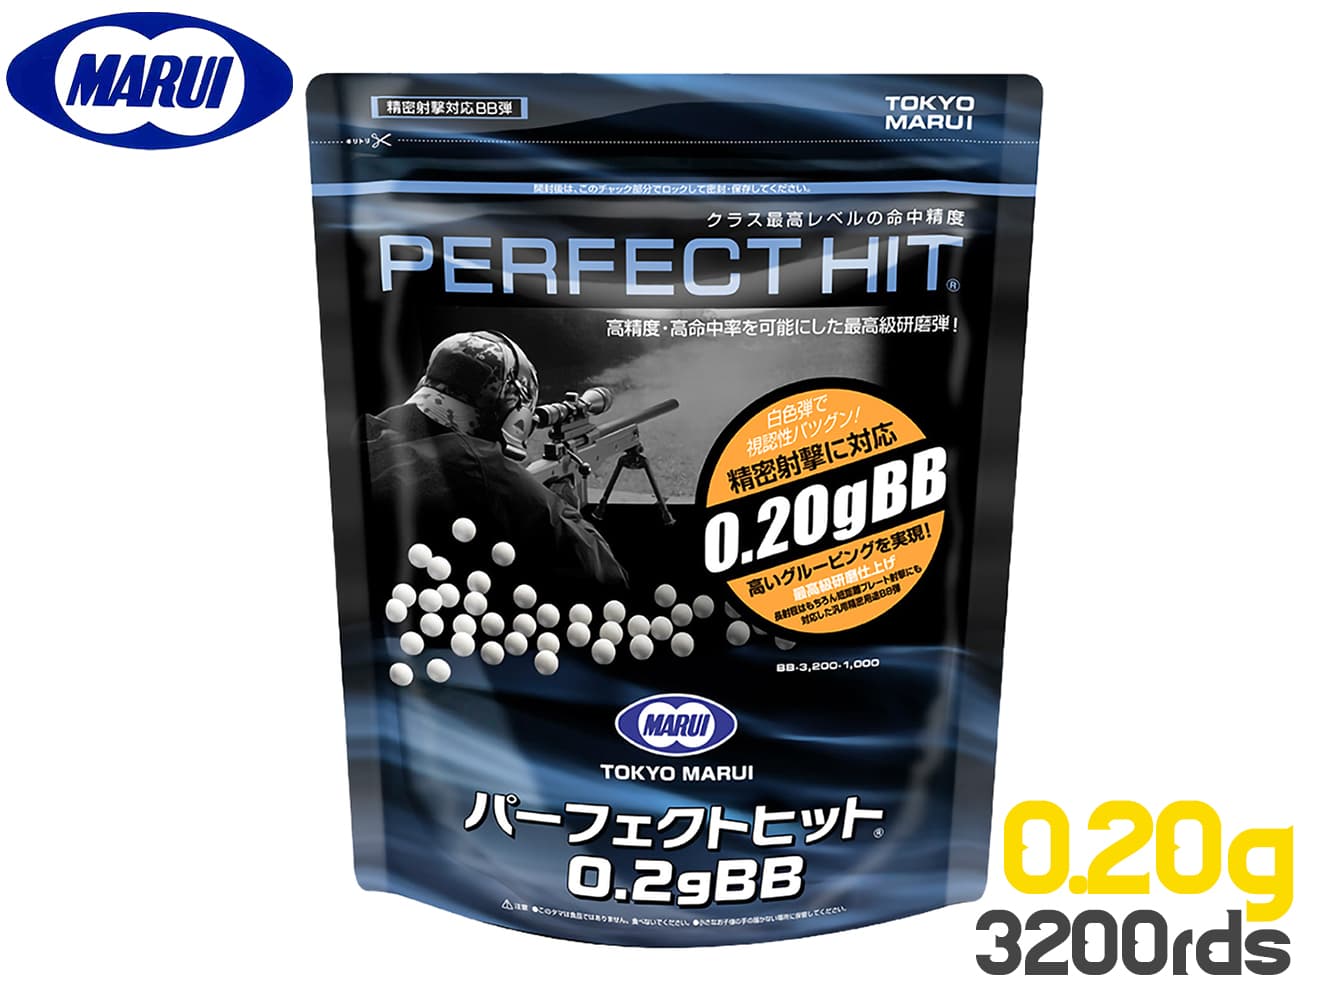 東京マルイ PERFECT HIT パーフェクトヒット 0.2gBB弾 3200発入り [セット内容：1個 / 2個]